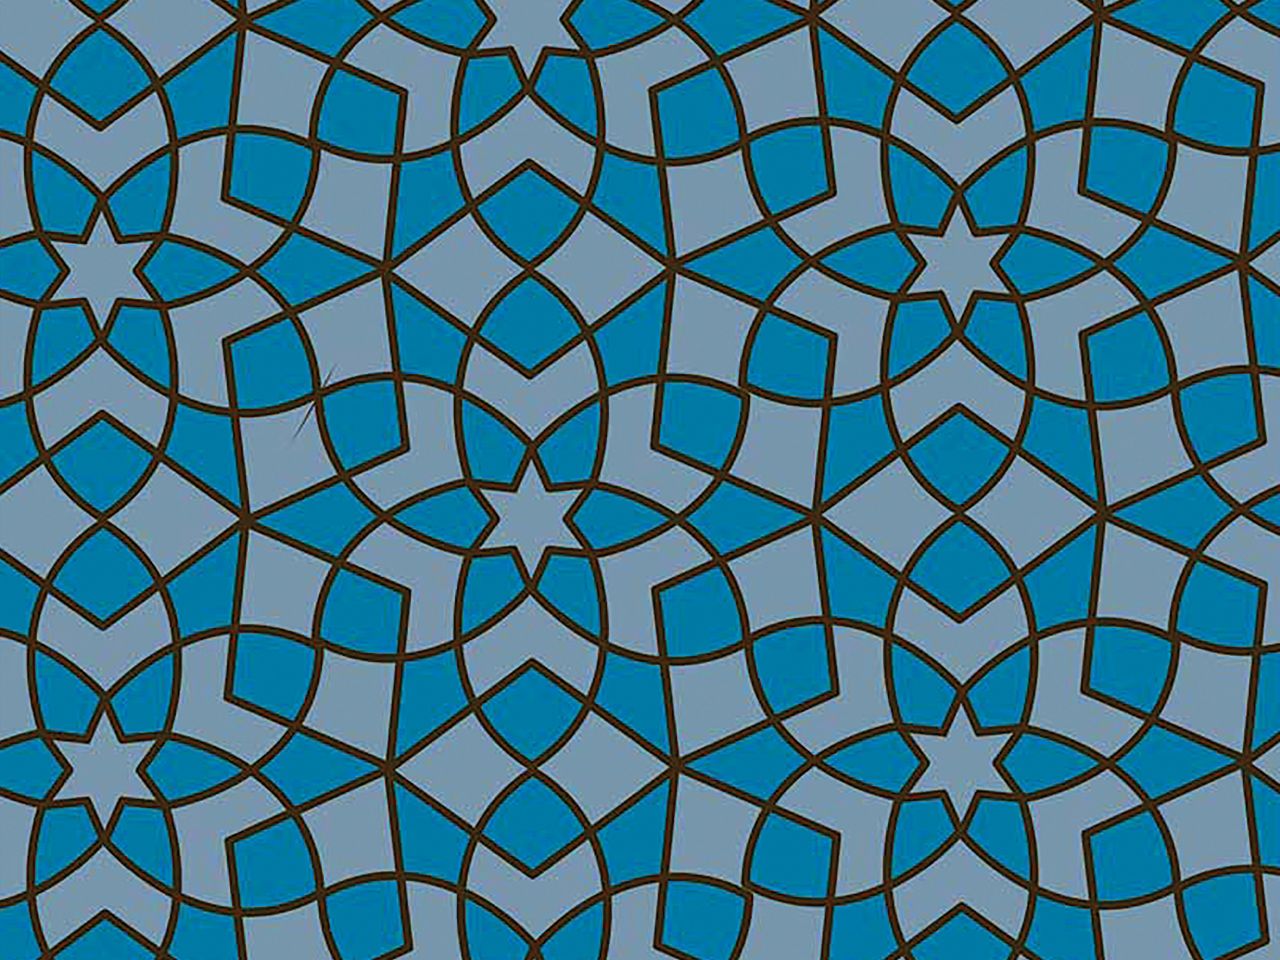 Transferfolie: Mosaique Bleu, Kakaobutter, Blau, 38 x 23 cm